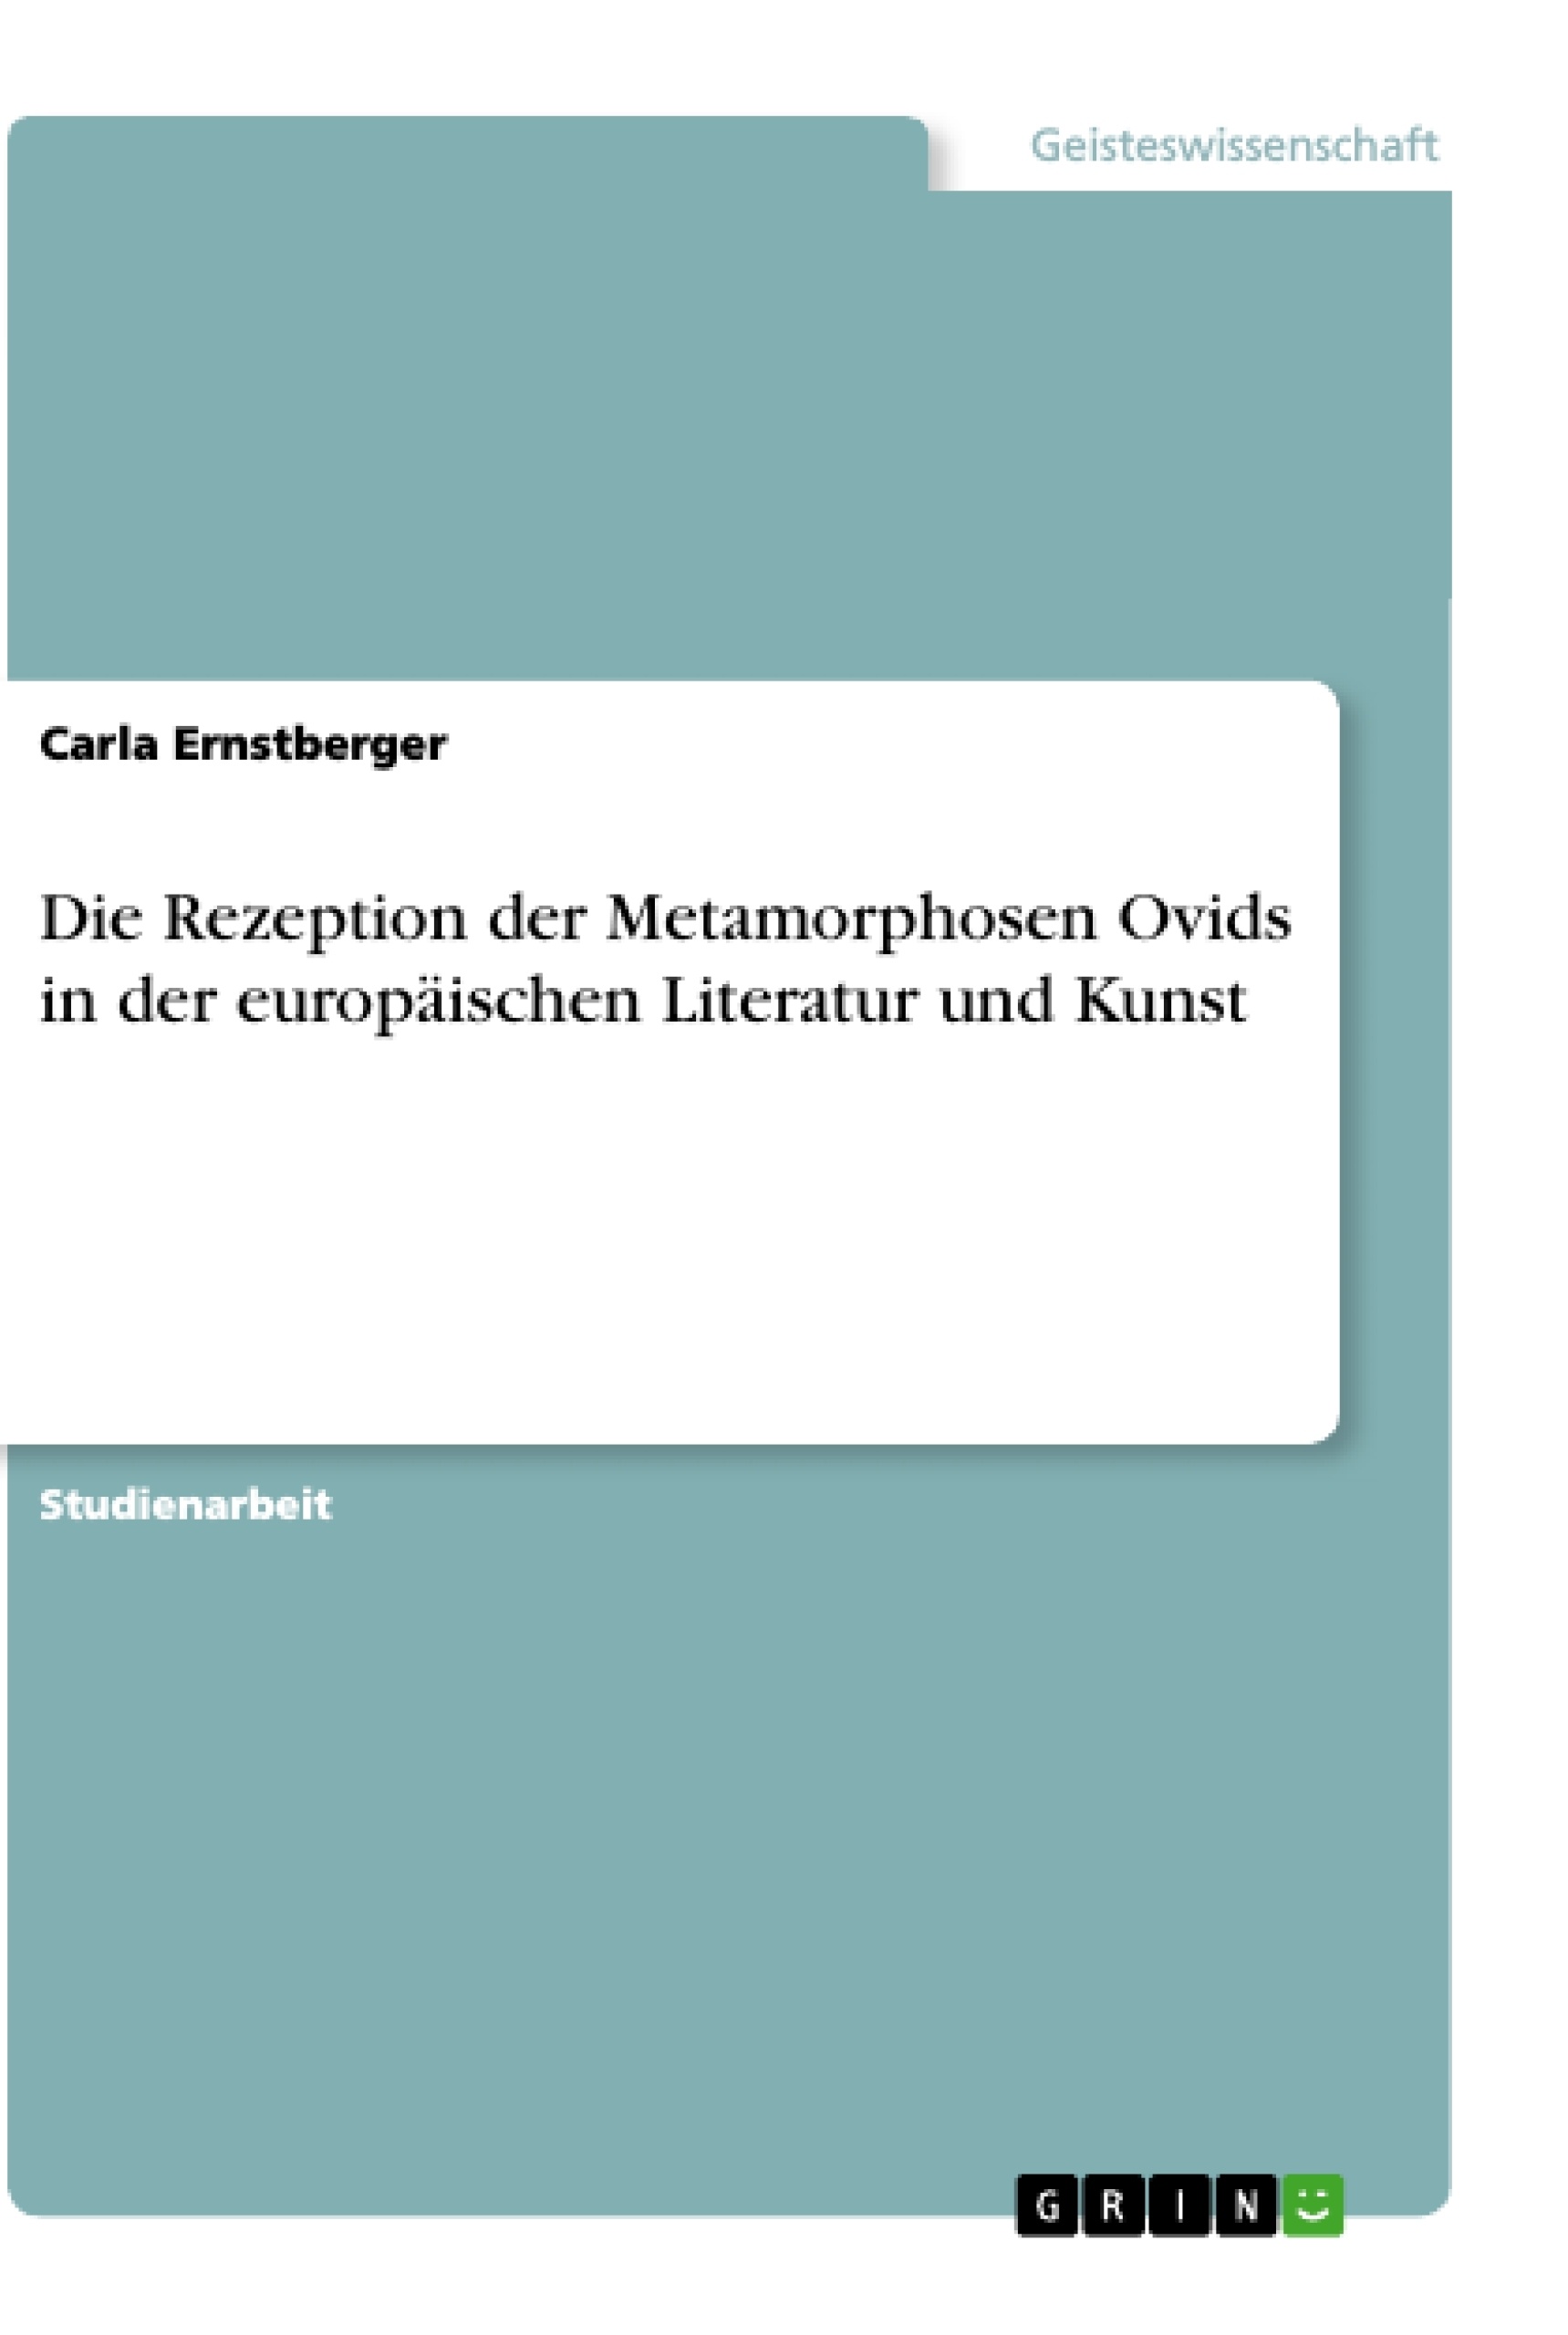 Título: Die Rezeption der Metamorphosen Ovids in der europäischen Literatur und Kunst